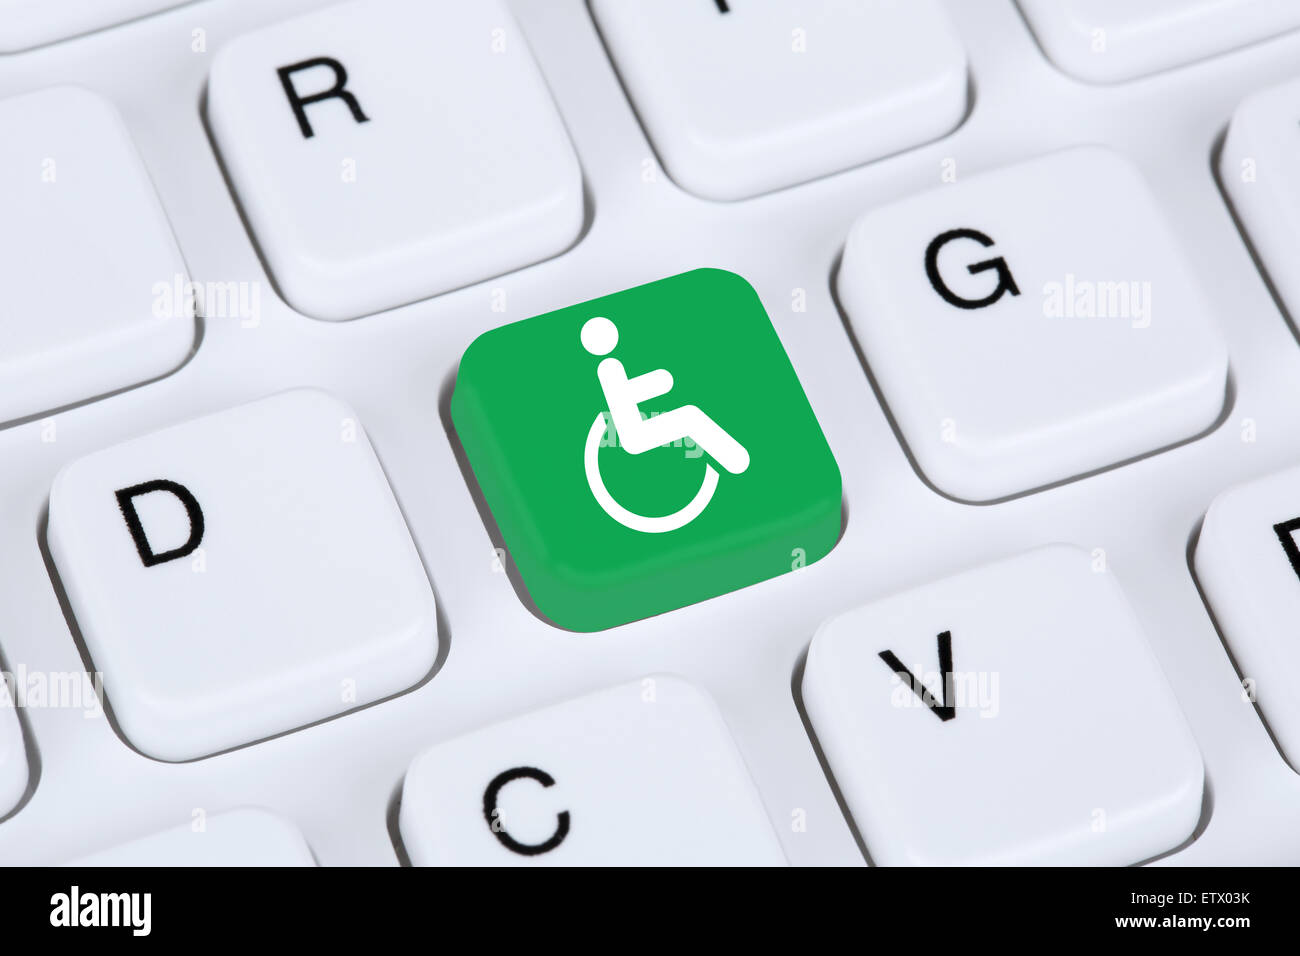 Accesibilidad Web en línea en internet equipo para discapacitados las personas con discapacidad Foto de stock